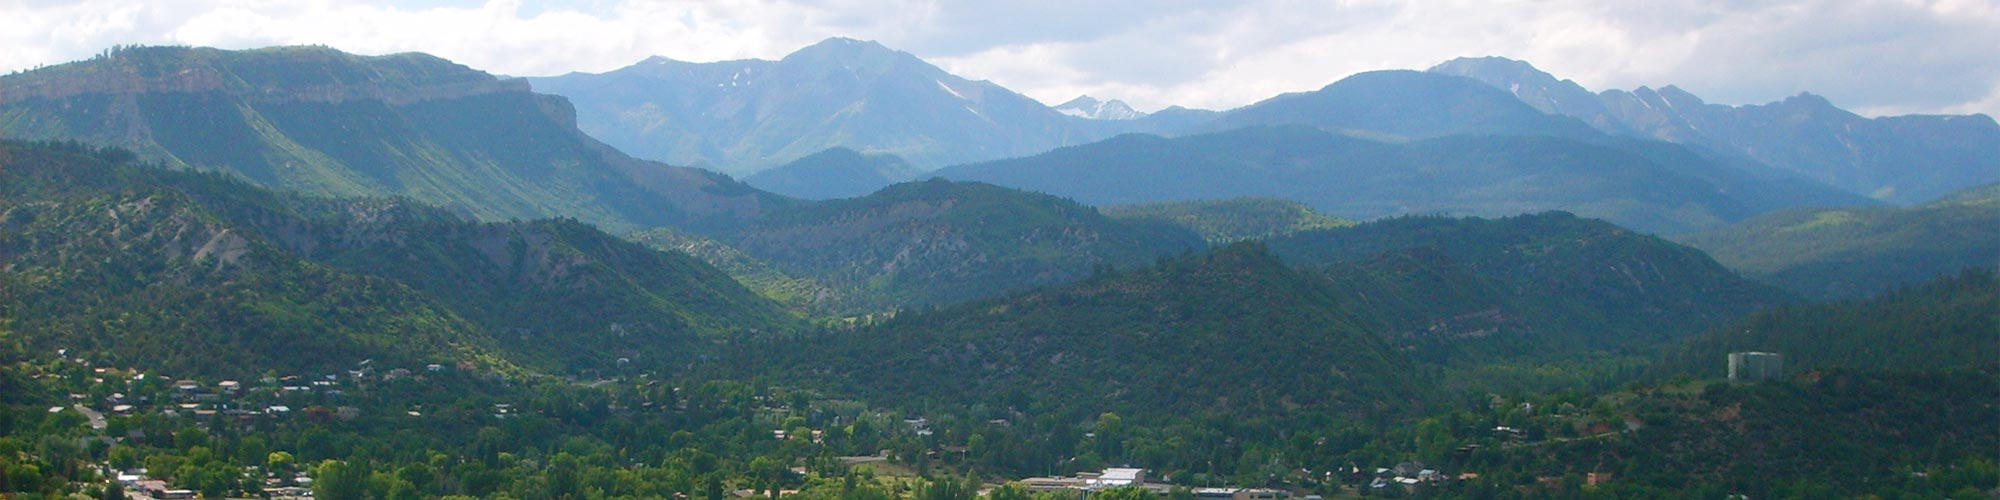 Health Services in Durango, Colorado